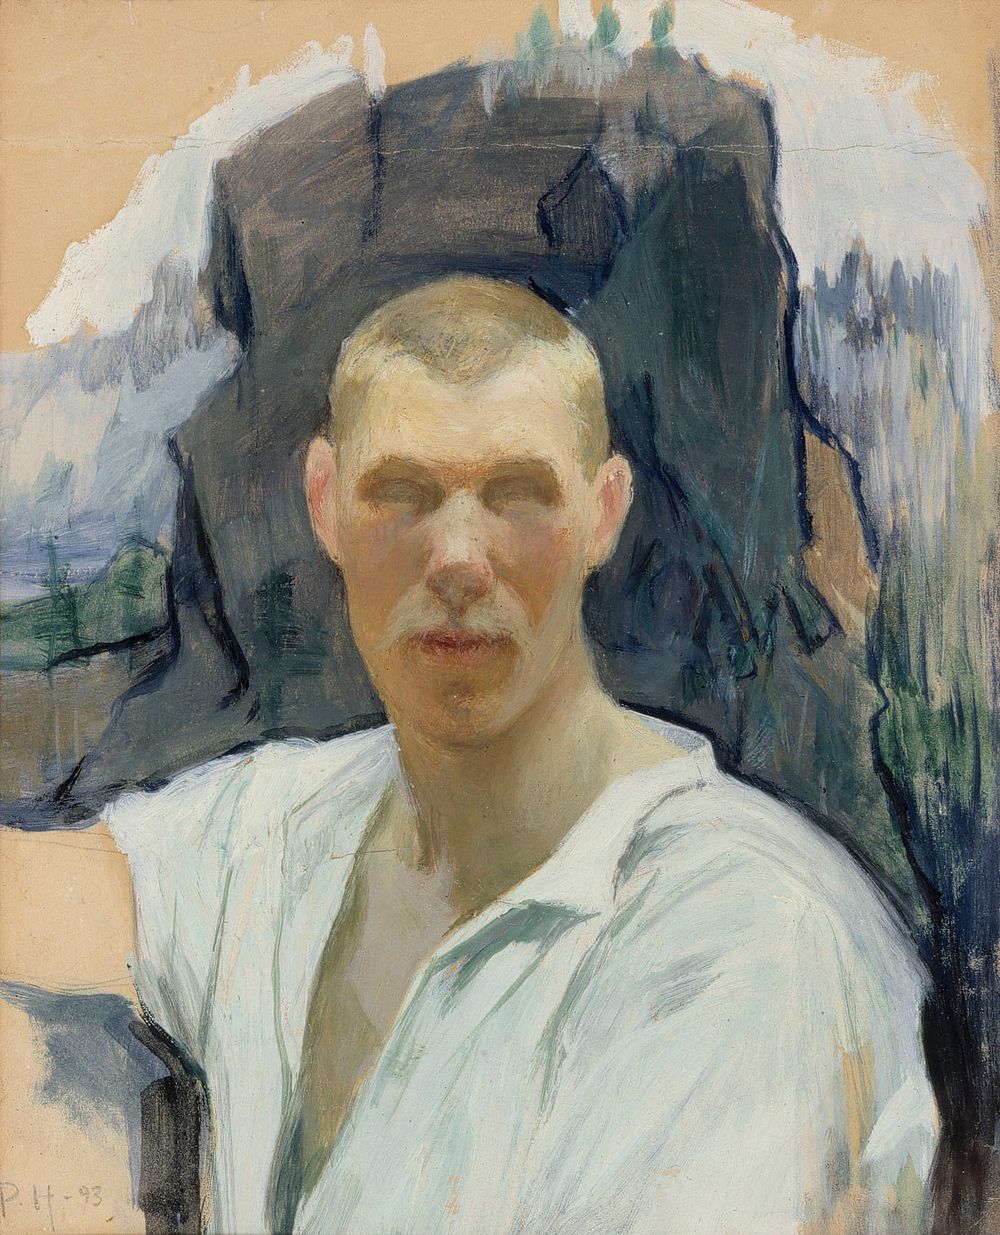 Self-portrait, 1893, by Pekka Halonen